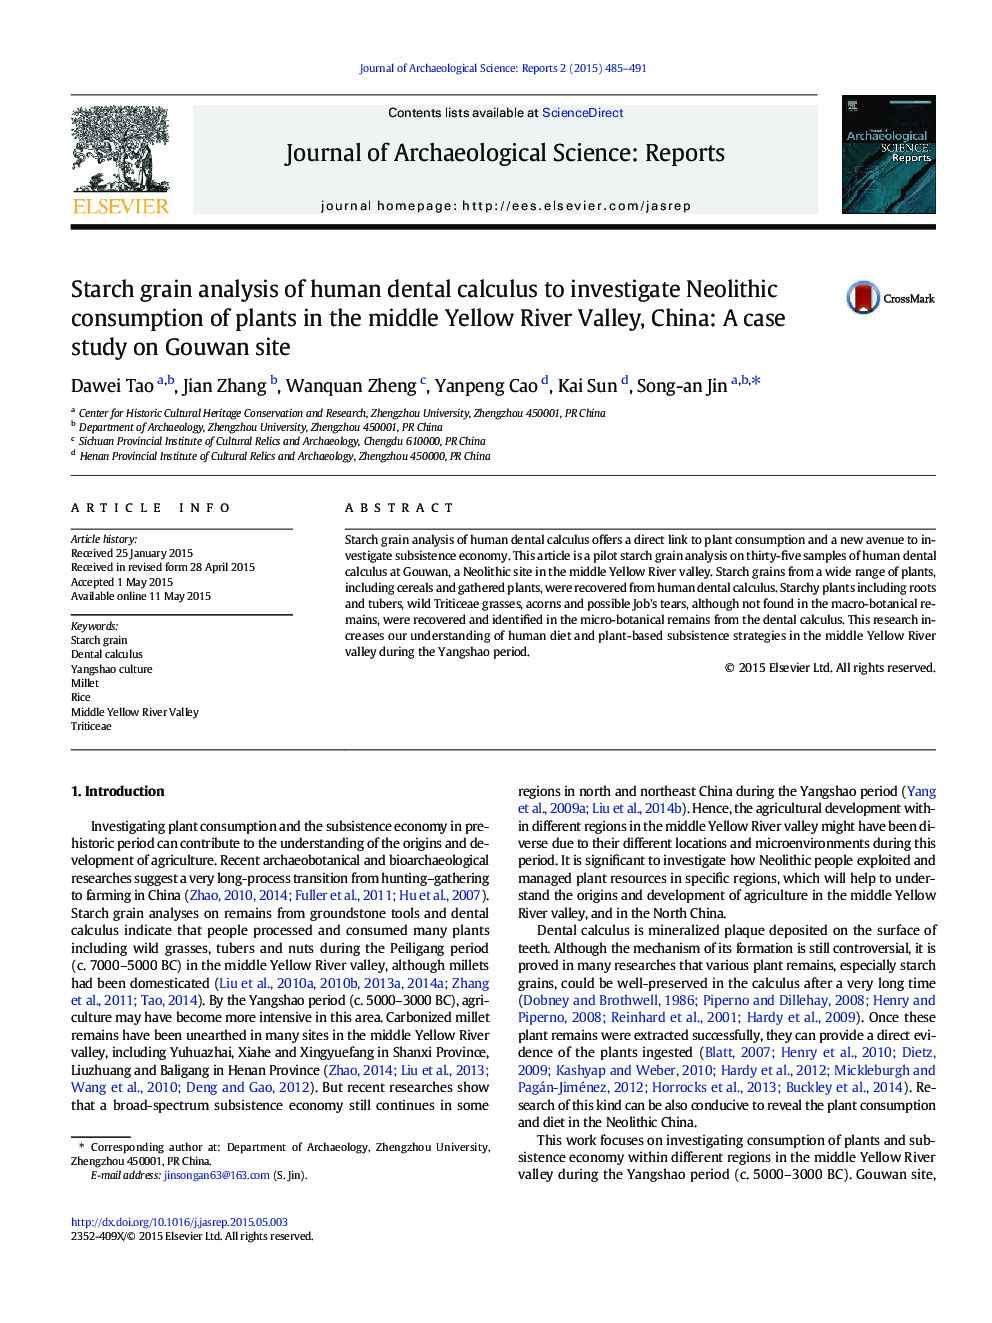 تجزیه و تحلیل دانه نشاسته ای از محاسبات دندان پزشکی انسان برای بررسی مصرف نوسنگی گیاهان در ولسوالی رودخانه زرد، چین: مطالعه موردی در سایت گووان 